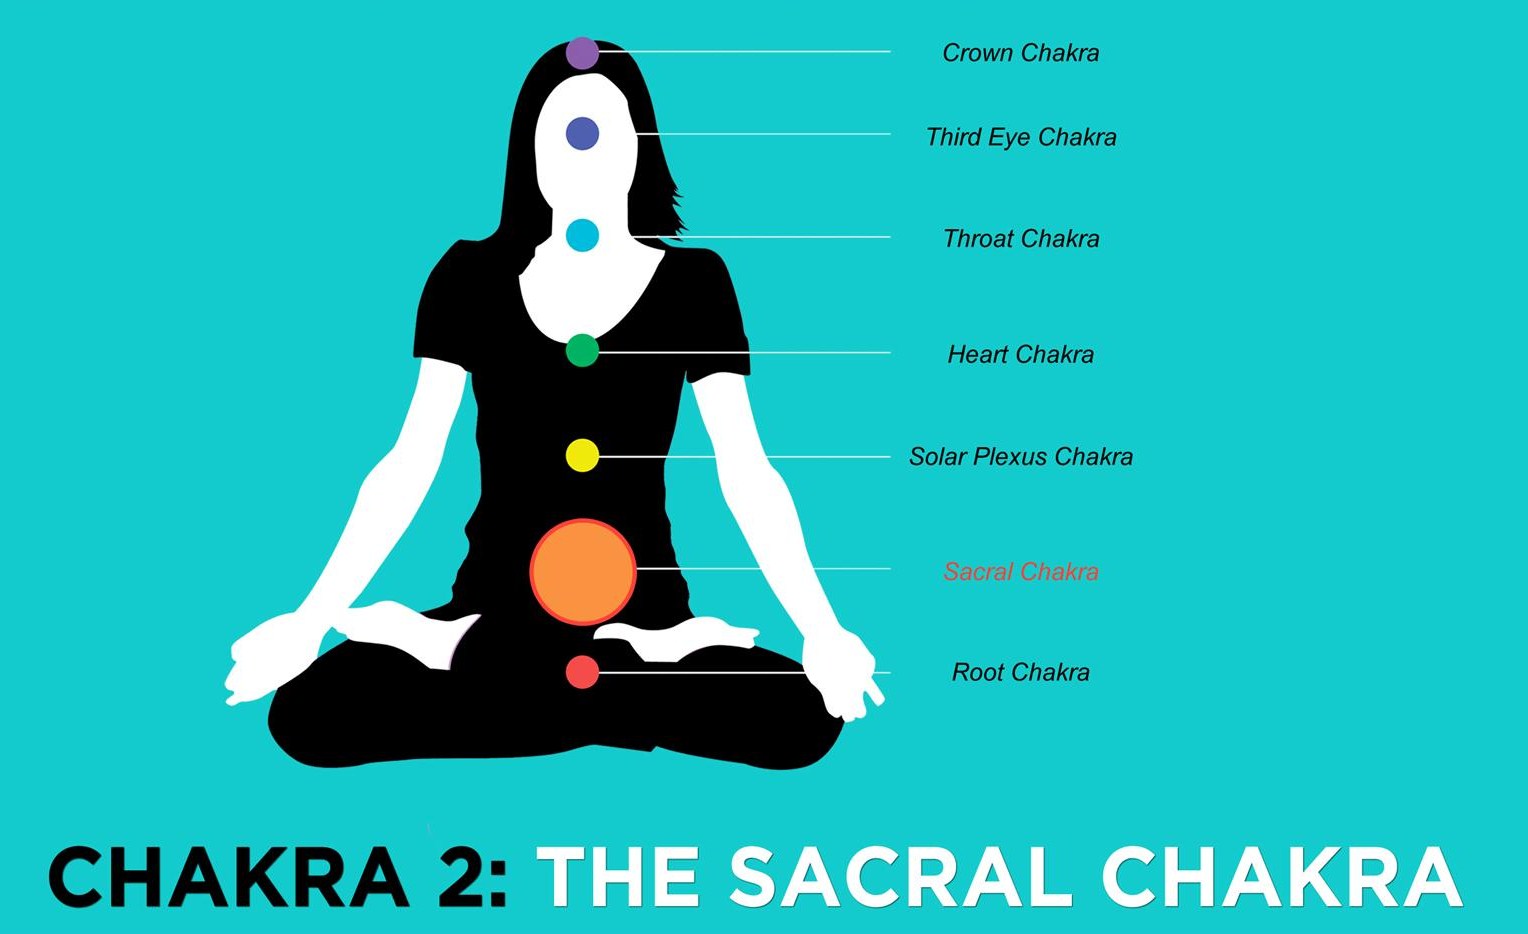 Sacral-Chakra-Modern Day Wise Woman